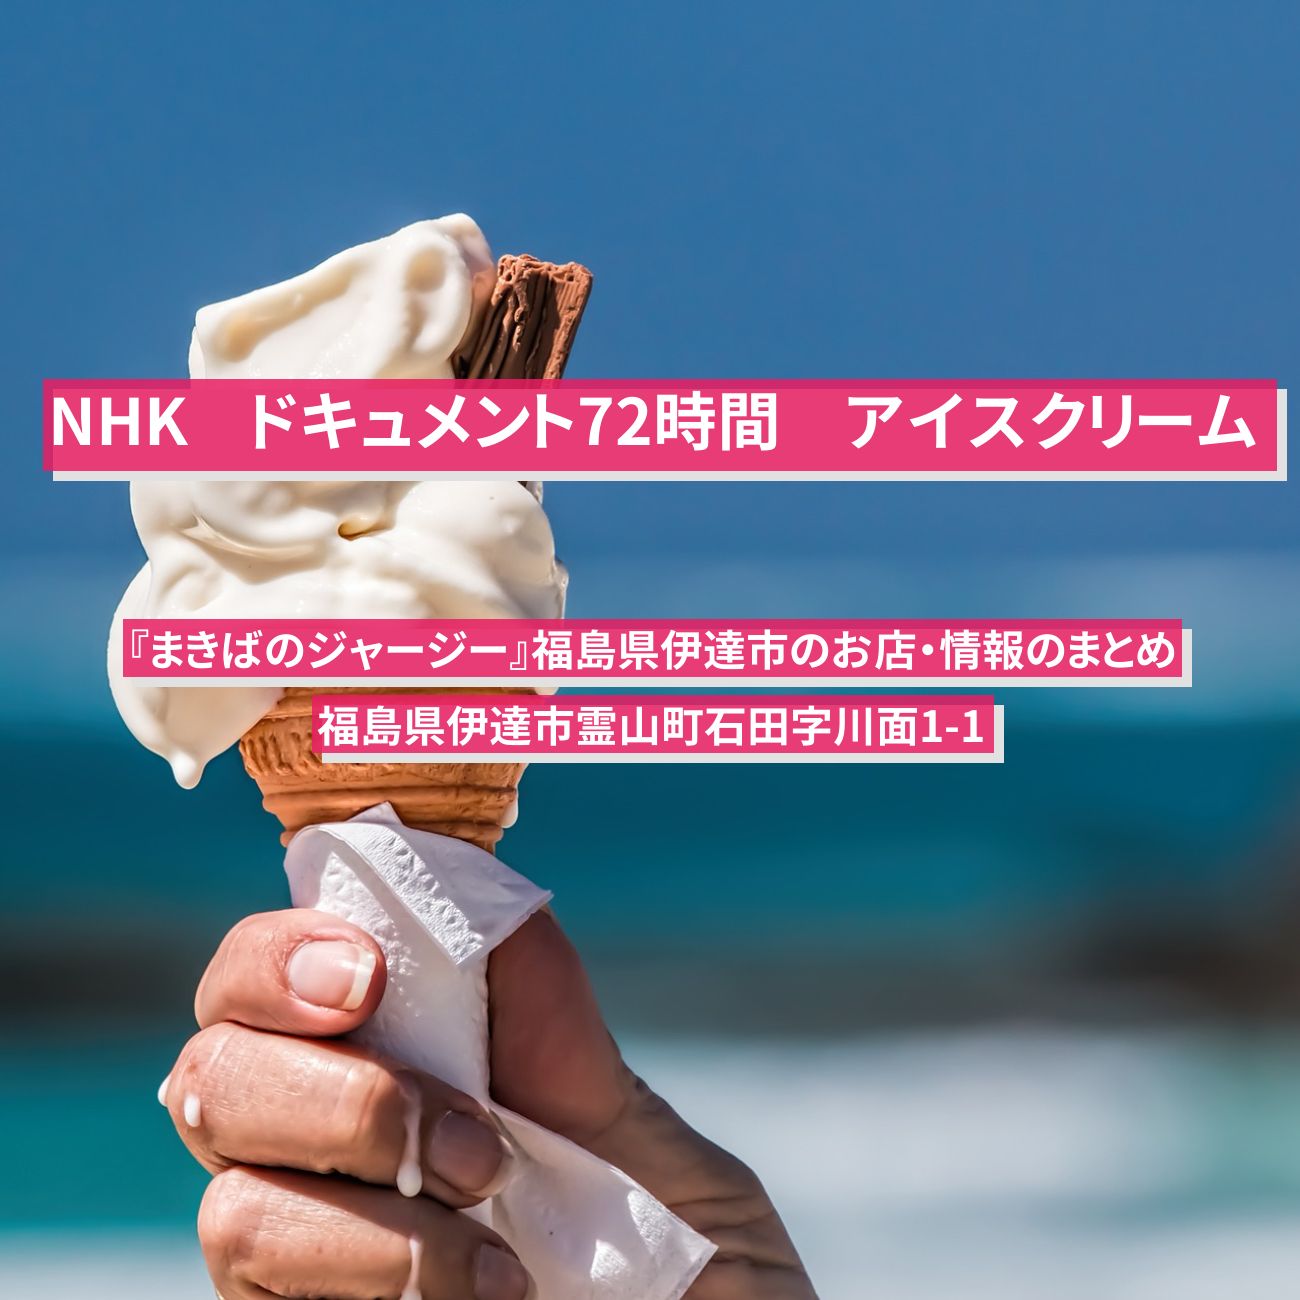 【NHK ドキュメント72時間】アイスクリーム『まきばのジャージー』福島県伊達市のお店・お取り寄せ情報